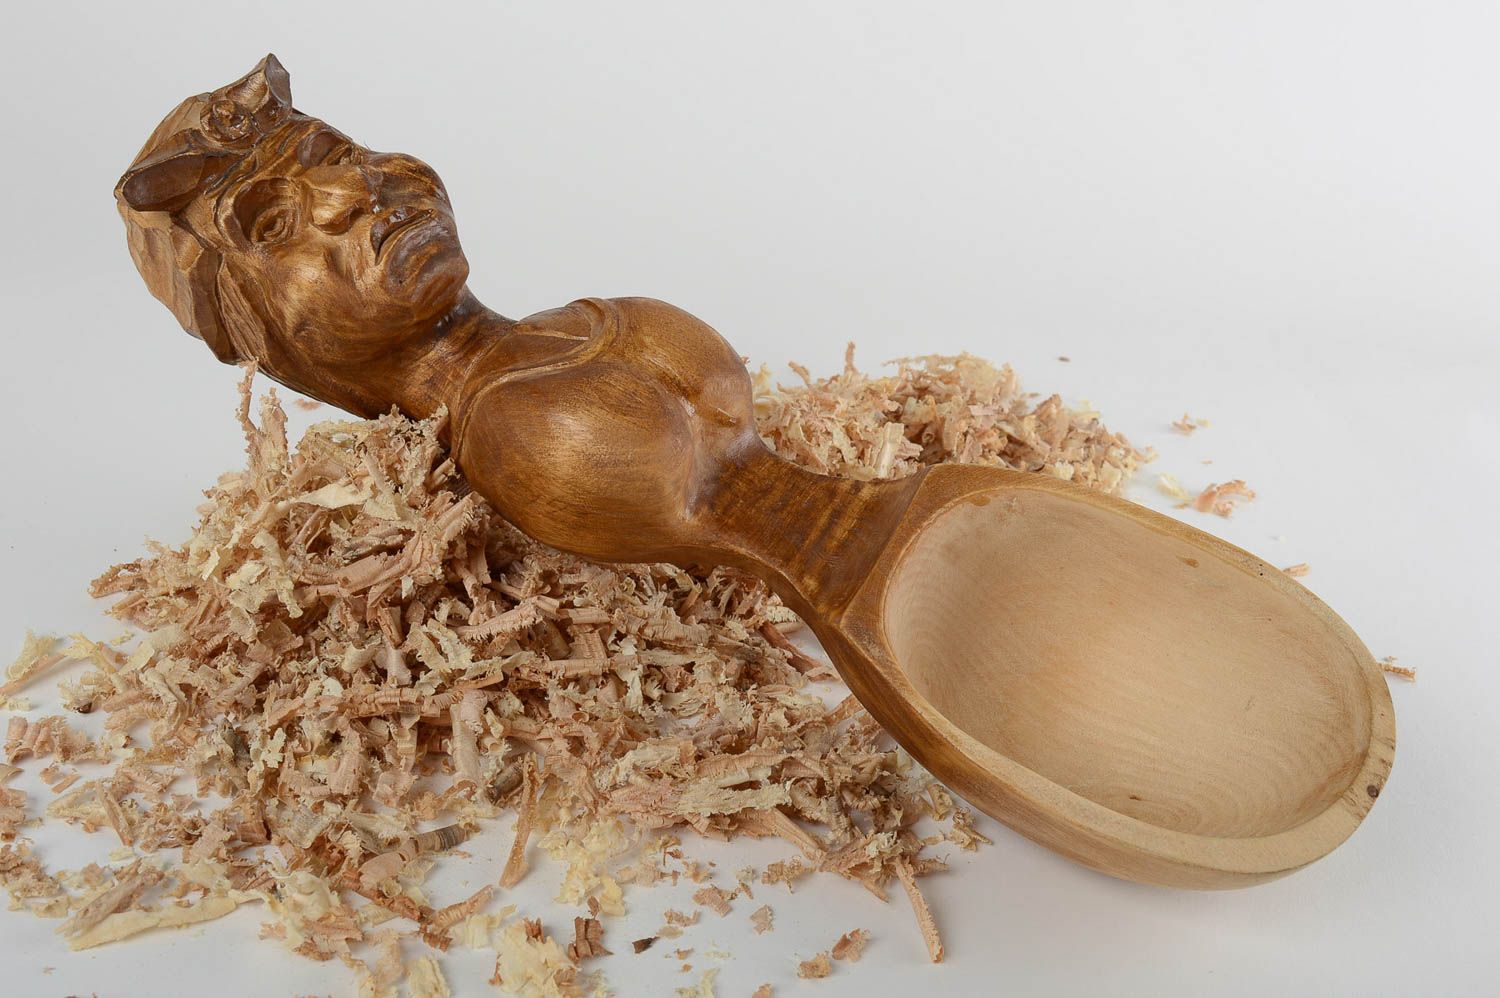 Handmade spoon decorative kitchenware wooden kitchenware interior decoration photo 1